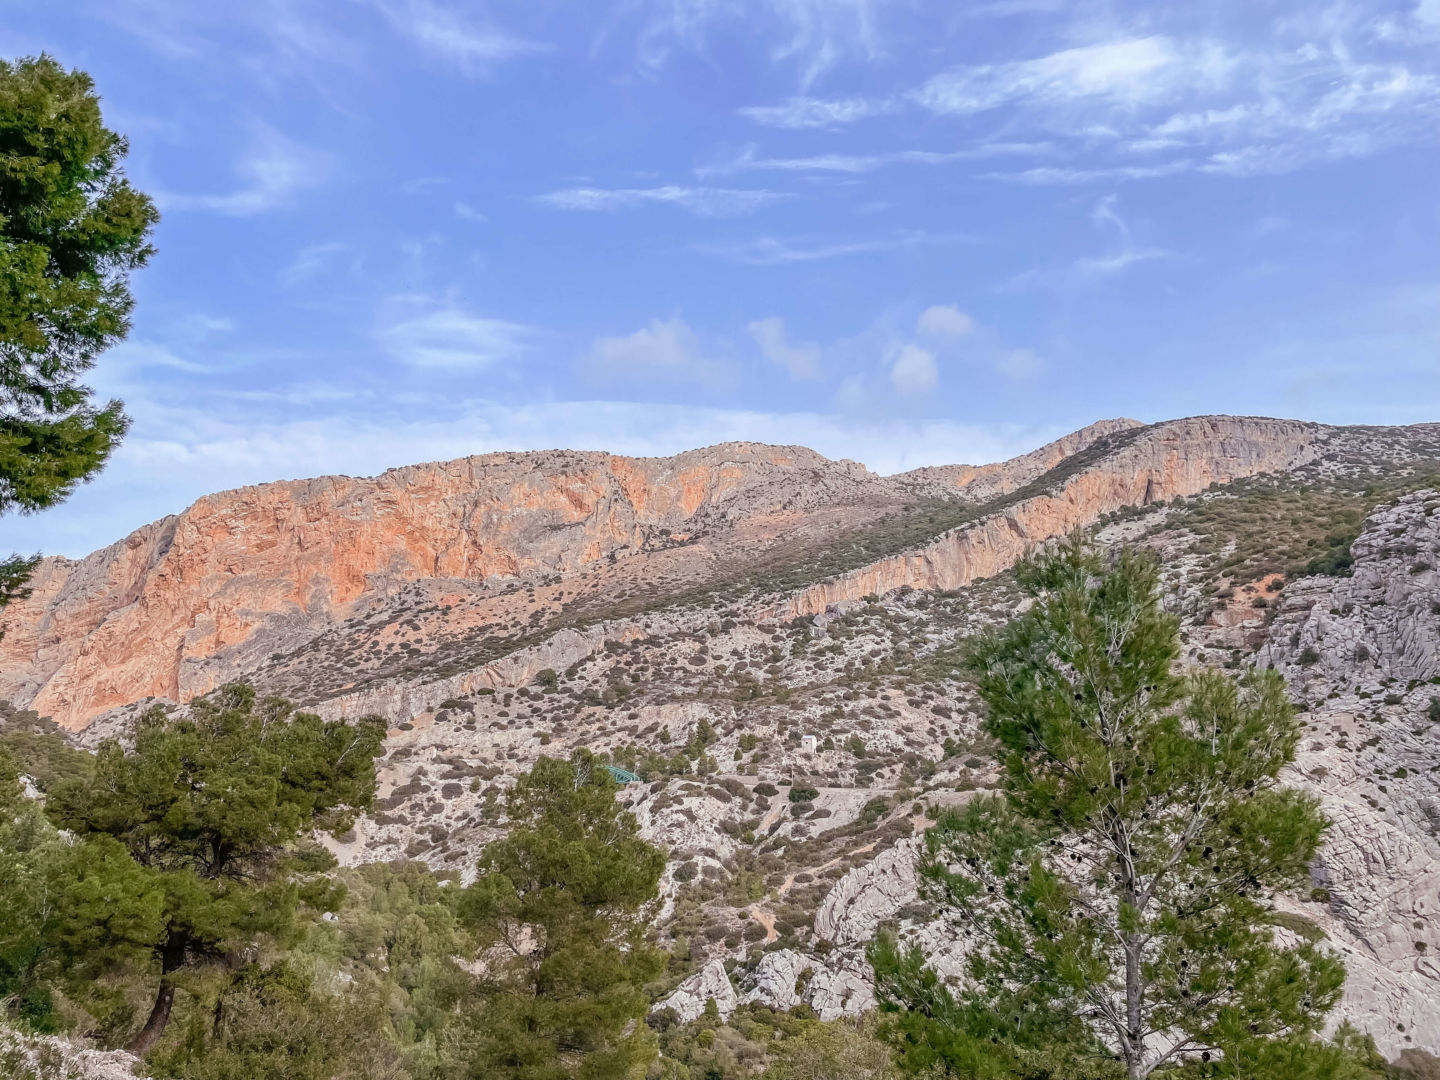 Uma vista bonita paisagem, onde aparece o céu azul, a montanha com tons laranja, cinza e verde e as árvores verdes na frente.